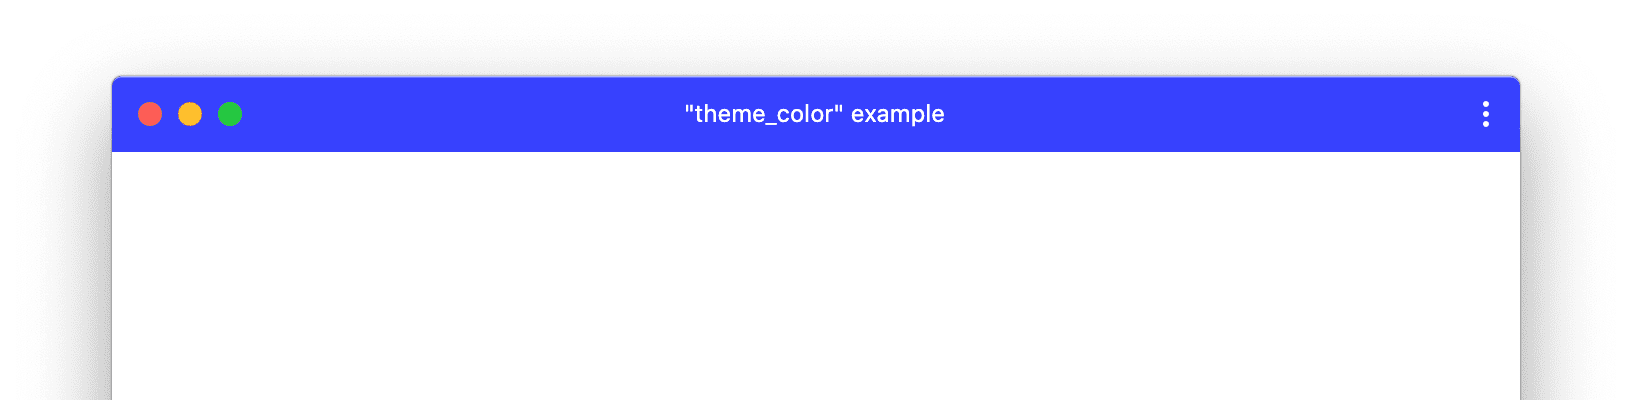 Przykład okna aplikacji PWA z niestandardowym kolorem_motywu.